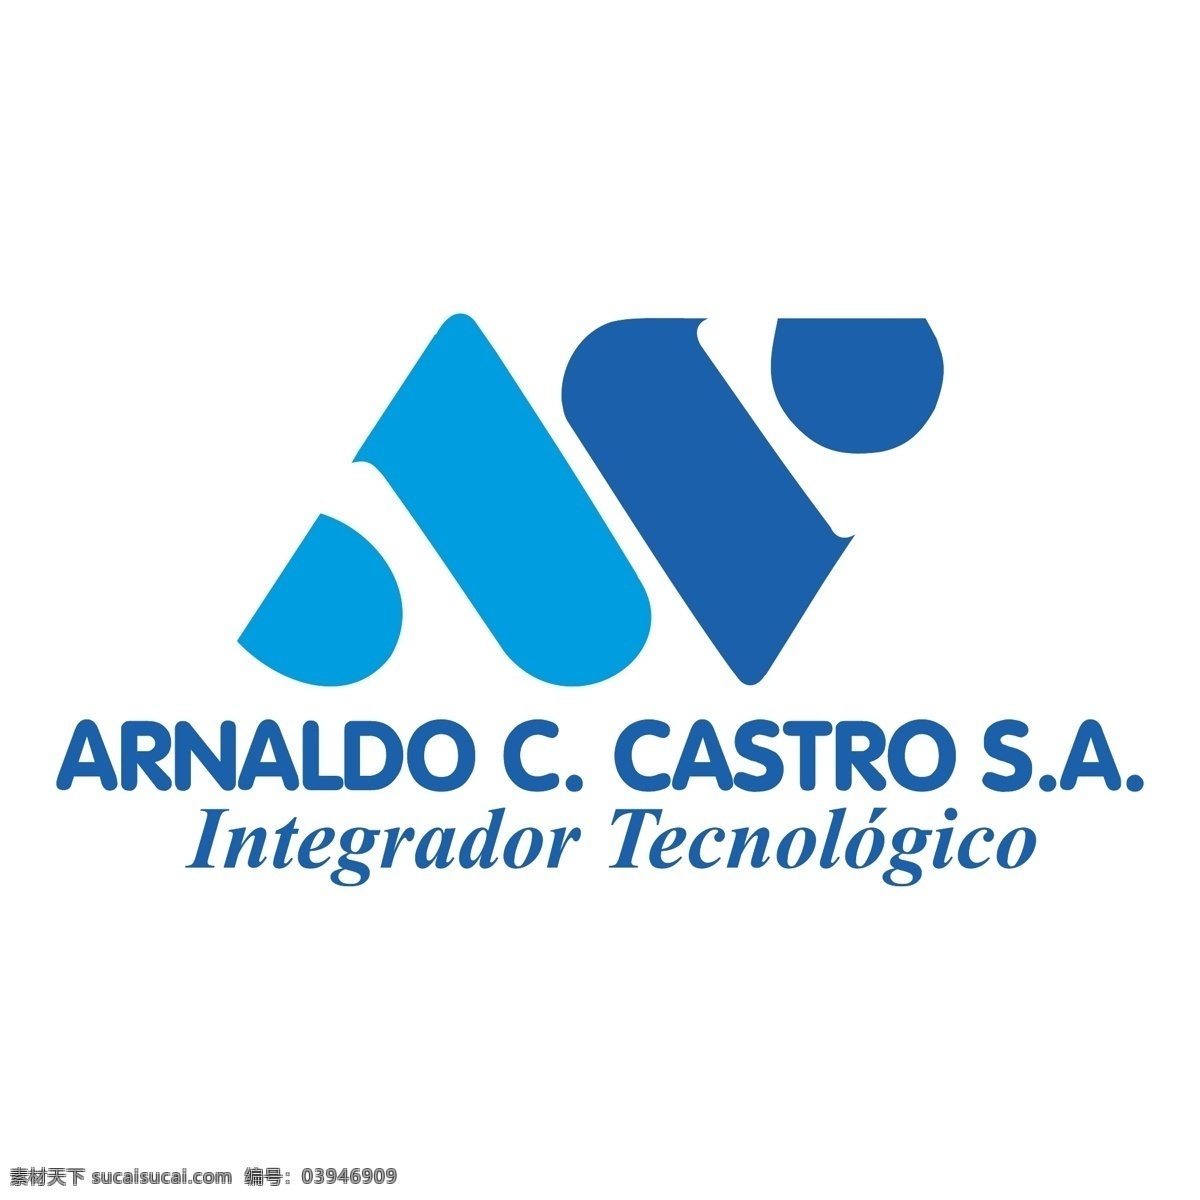 阿纳尔 c 卡斯特罗 一个 免费 arnaldo c. 公司 标志 psd源文件 logo设计